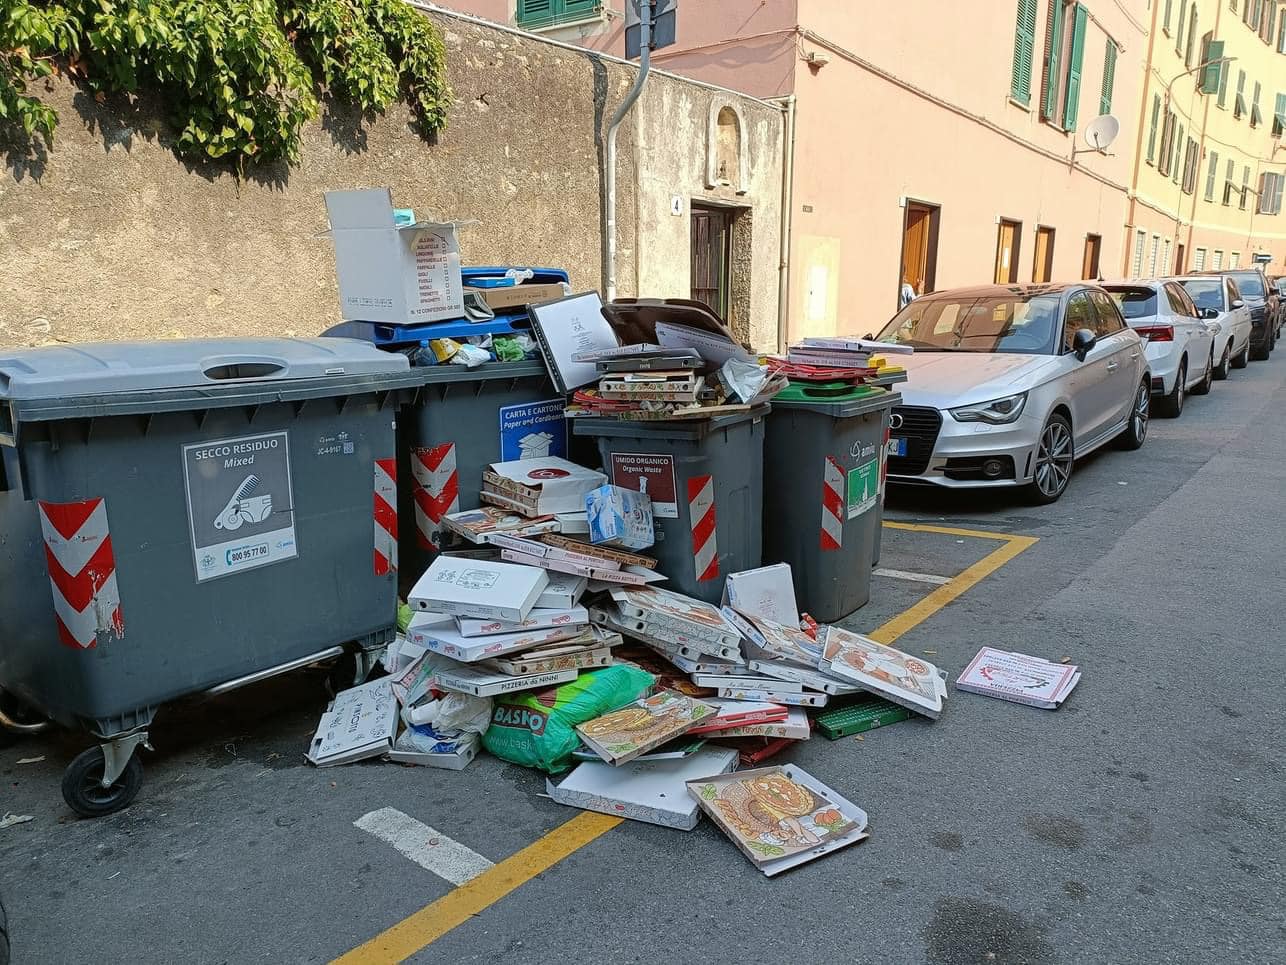 Questa mattina Vernazzola si è svegliata in queste condizioni: la spazzatura è presente ovunque.